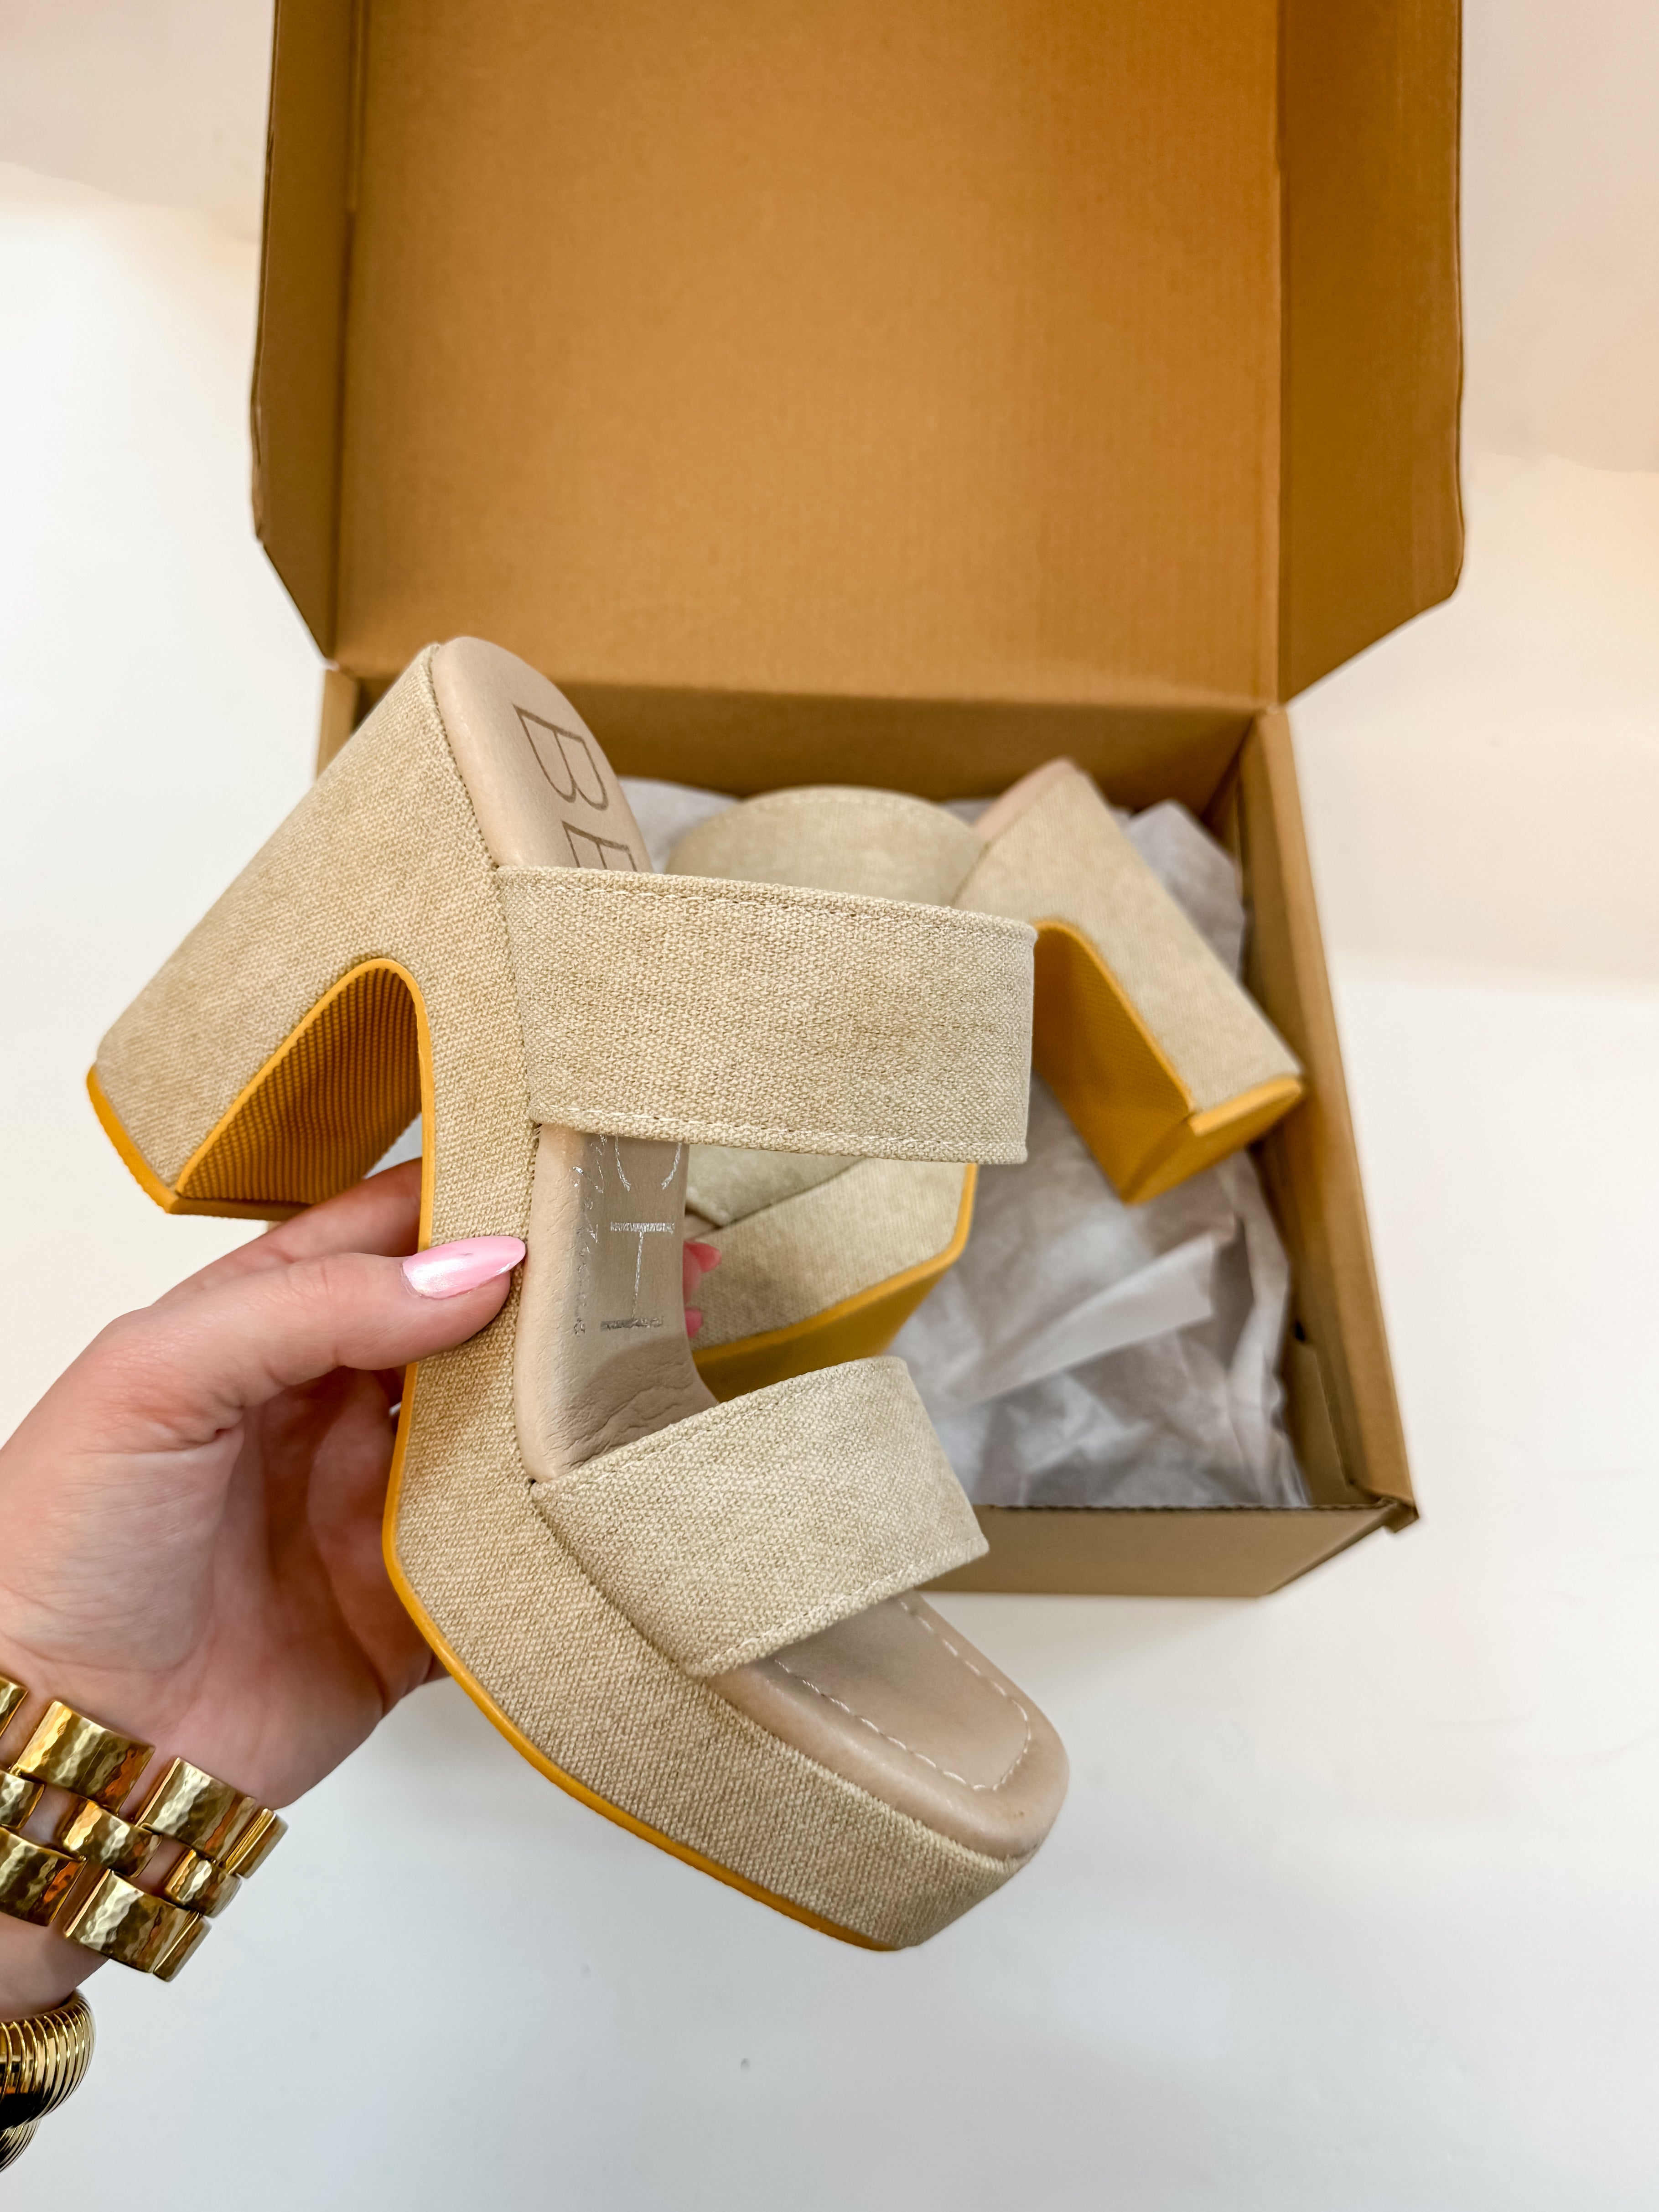 Matisse | Gem Heeled Sandal in Sand Beige - Giddy Up Glamour Boutique